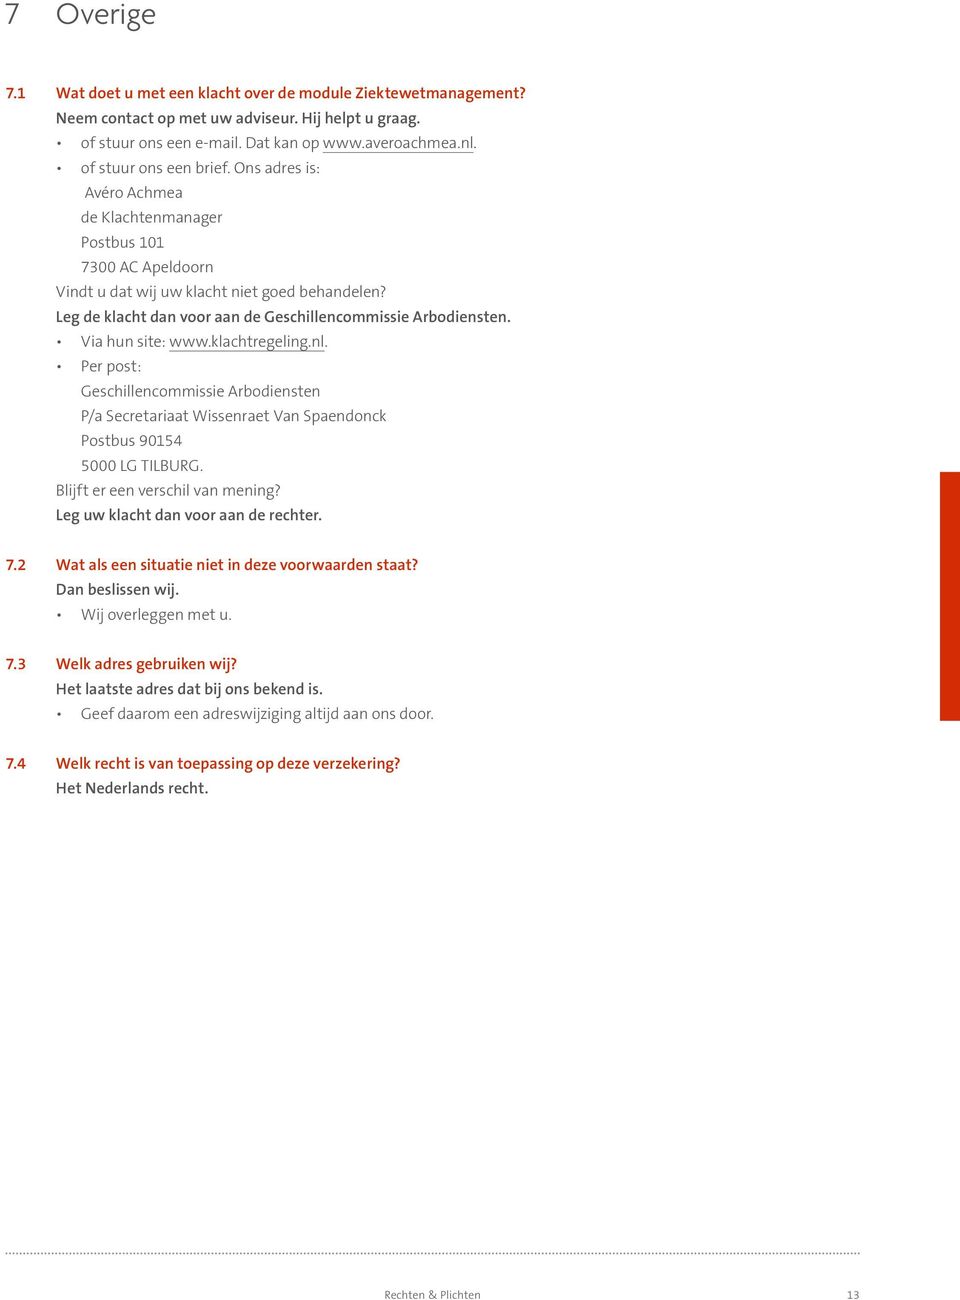 Leg de klacht dan voor aan de Geschillencommissie Arbodiensten. Via hun site: www.klachtregeling.nl.